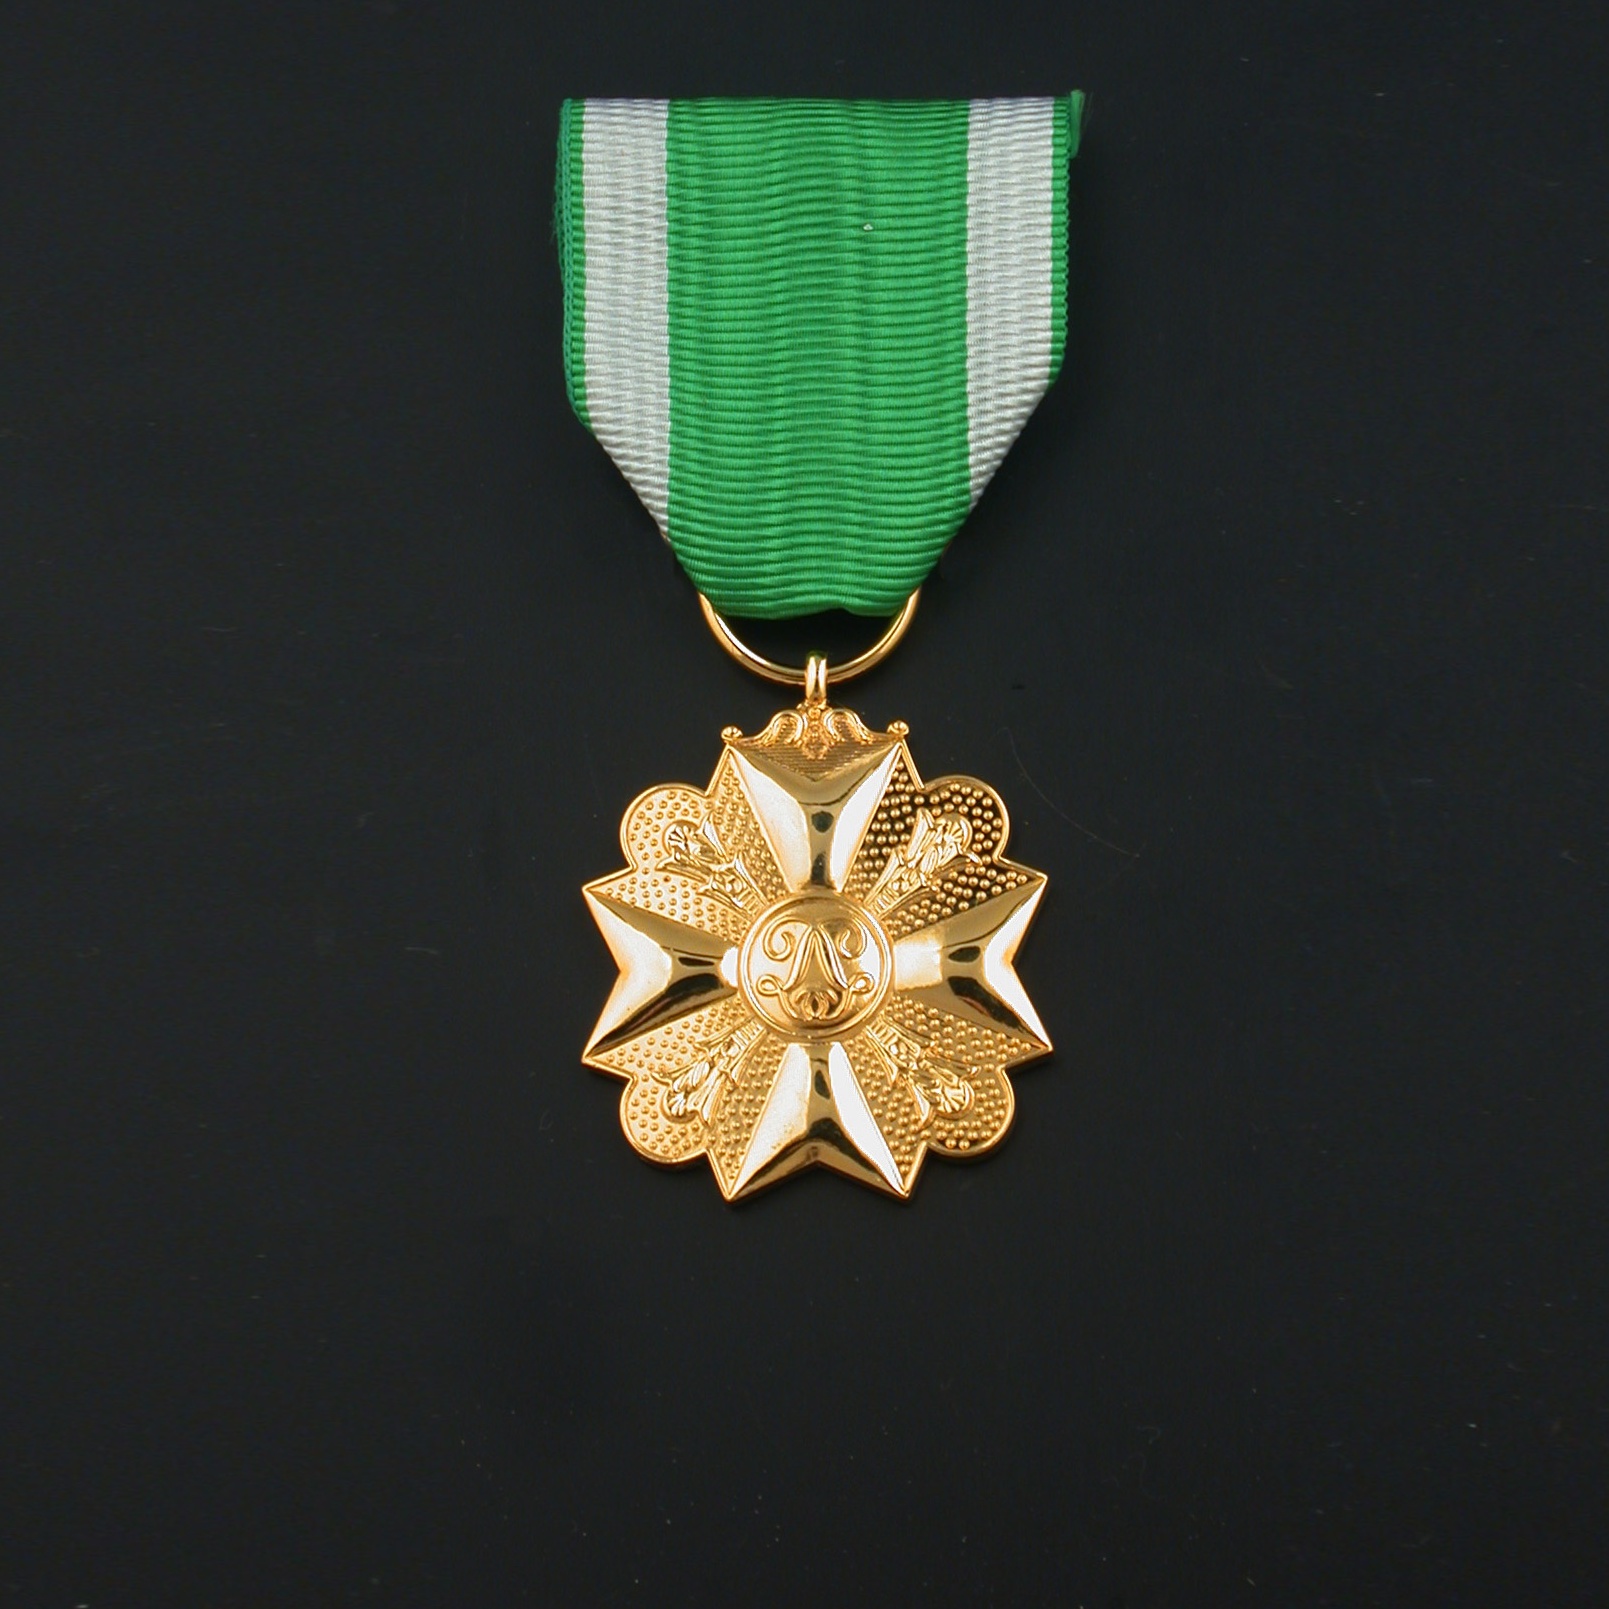 officieel-burgerlijke-medaille-1e-klasse-brandweer-01-01-07-burgerlijk-brandweer-burgerlijke-medaille-1e-klasse-officieel-model.jpg